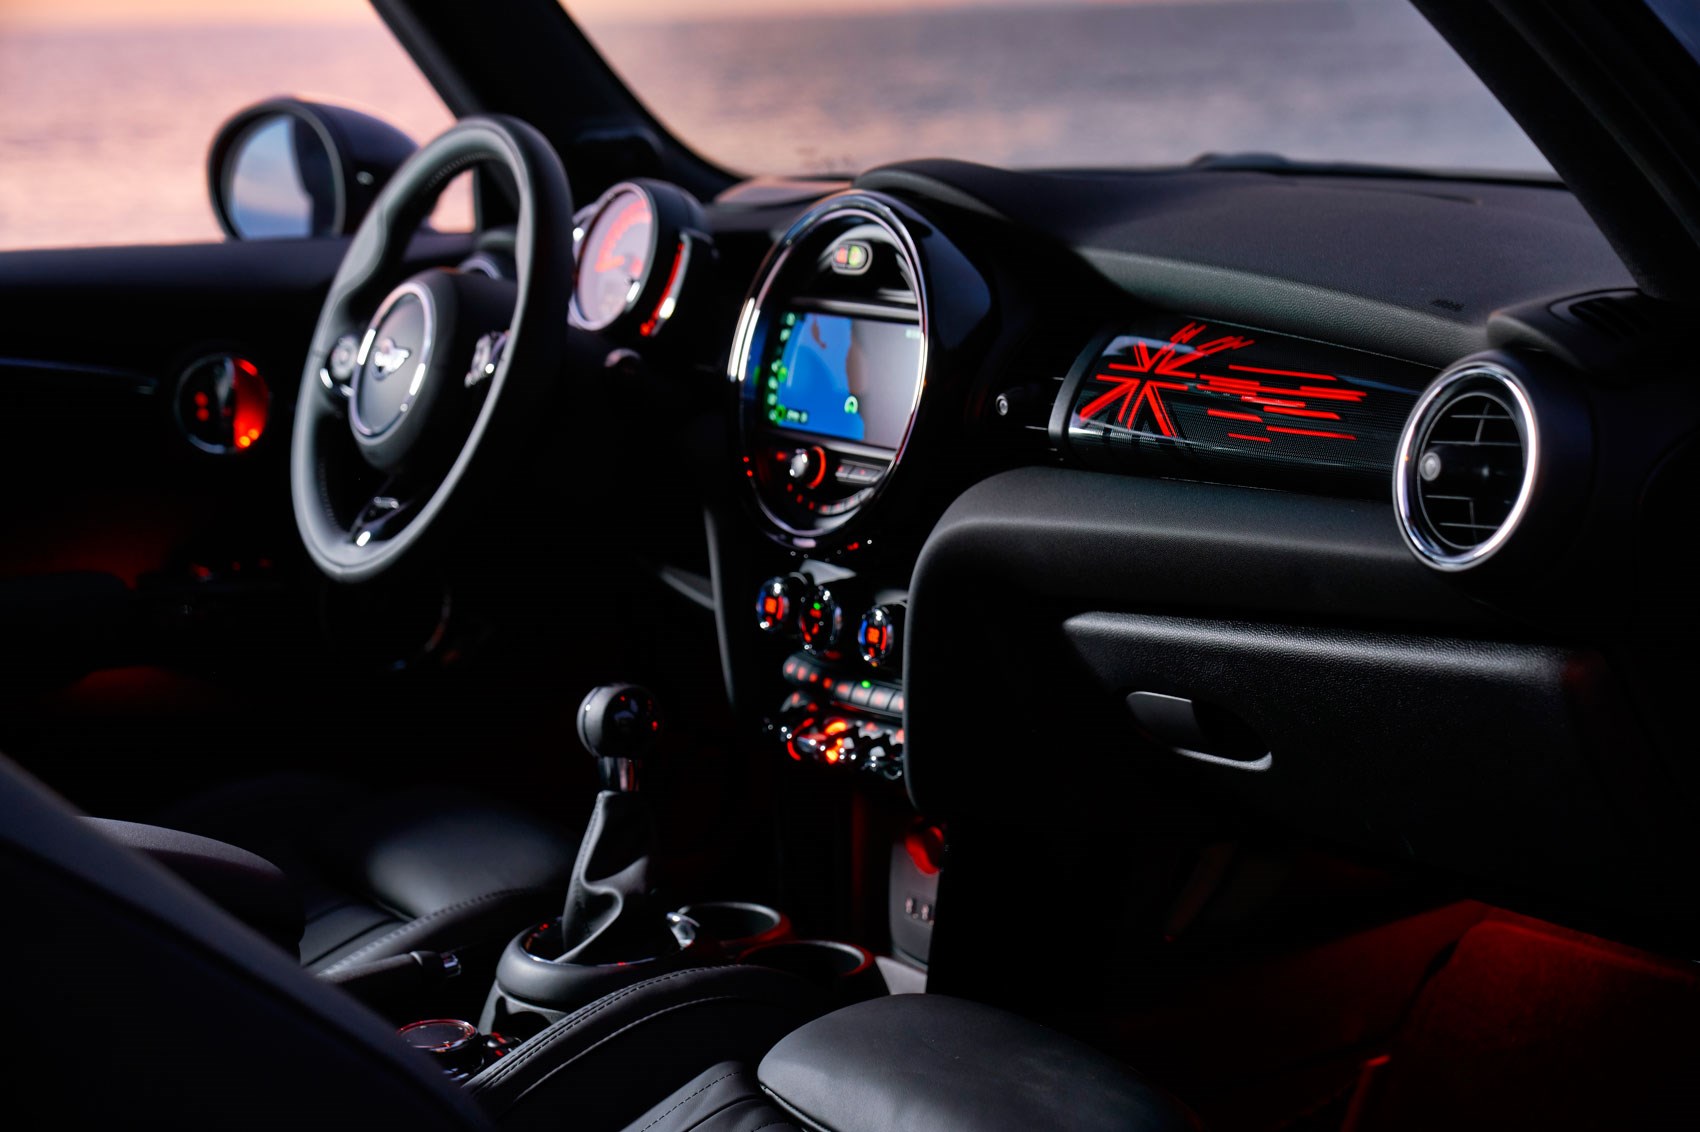 New 2018 Mini hatchback, five-door, Convertible facelift